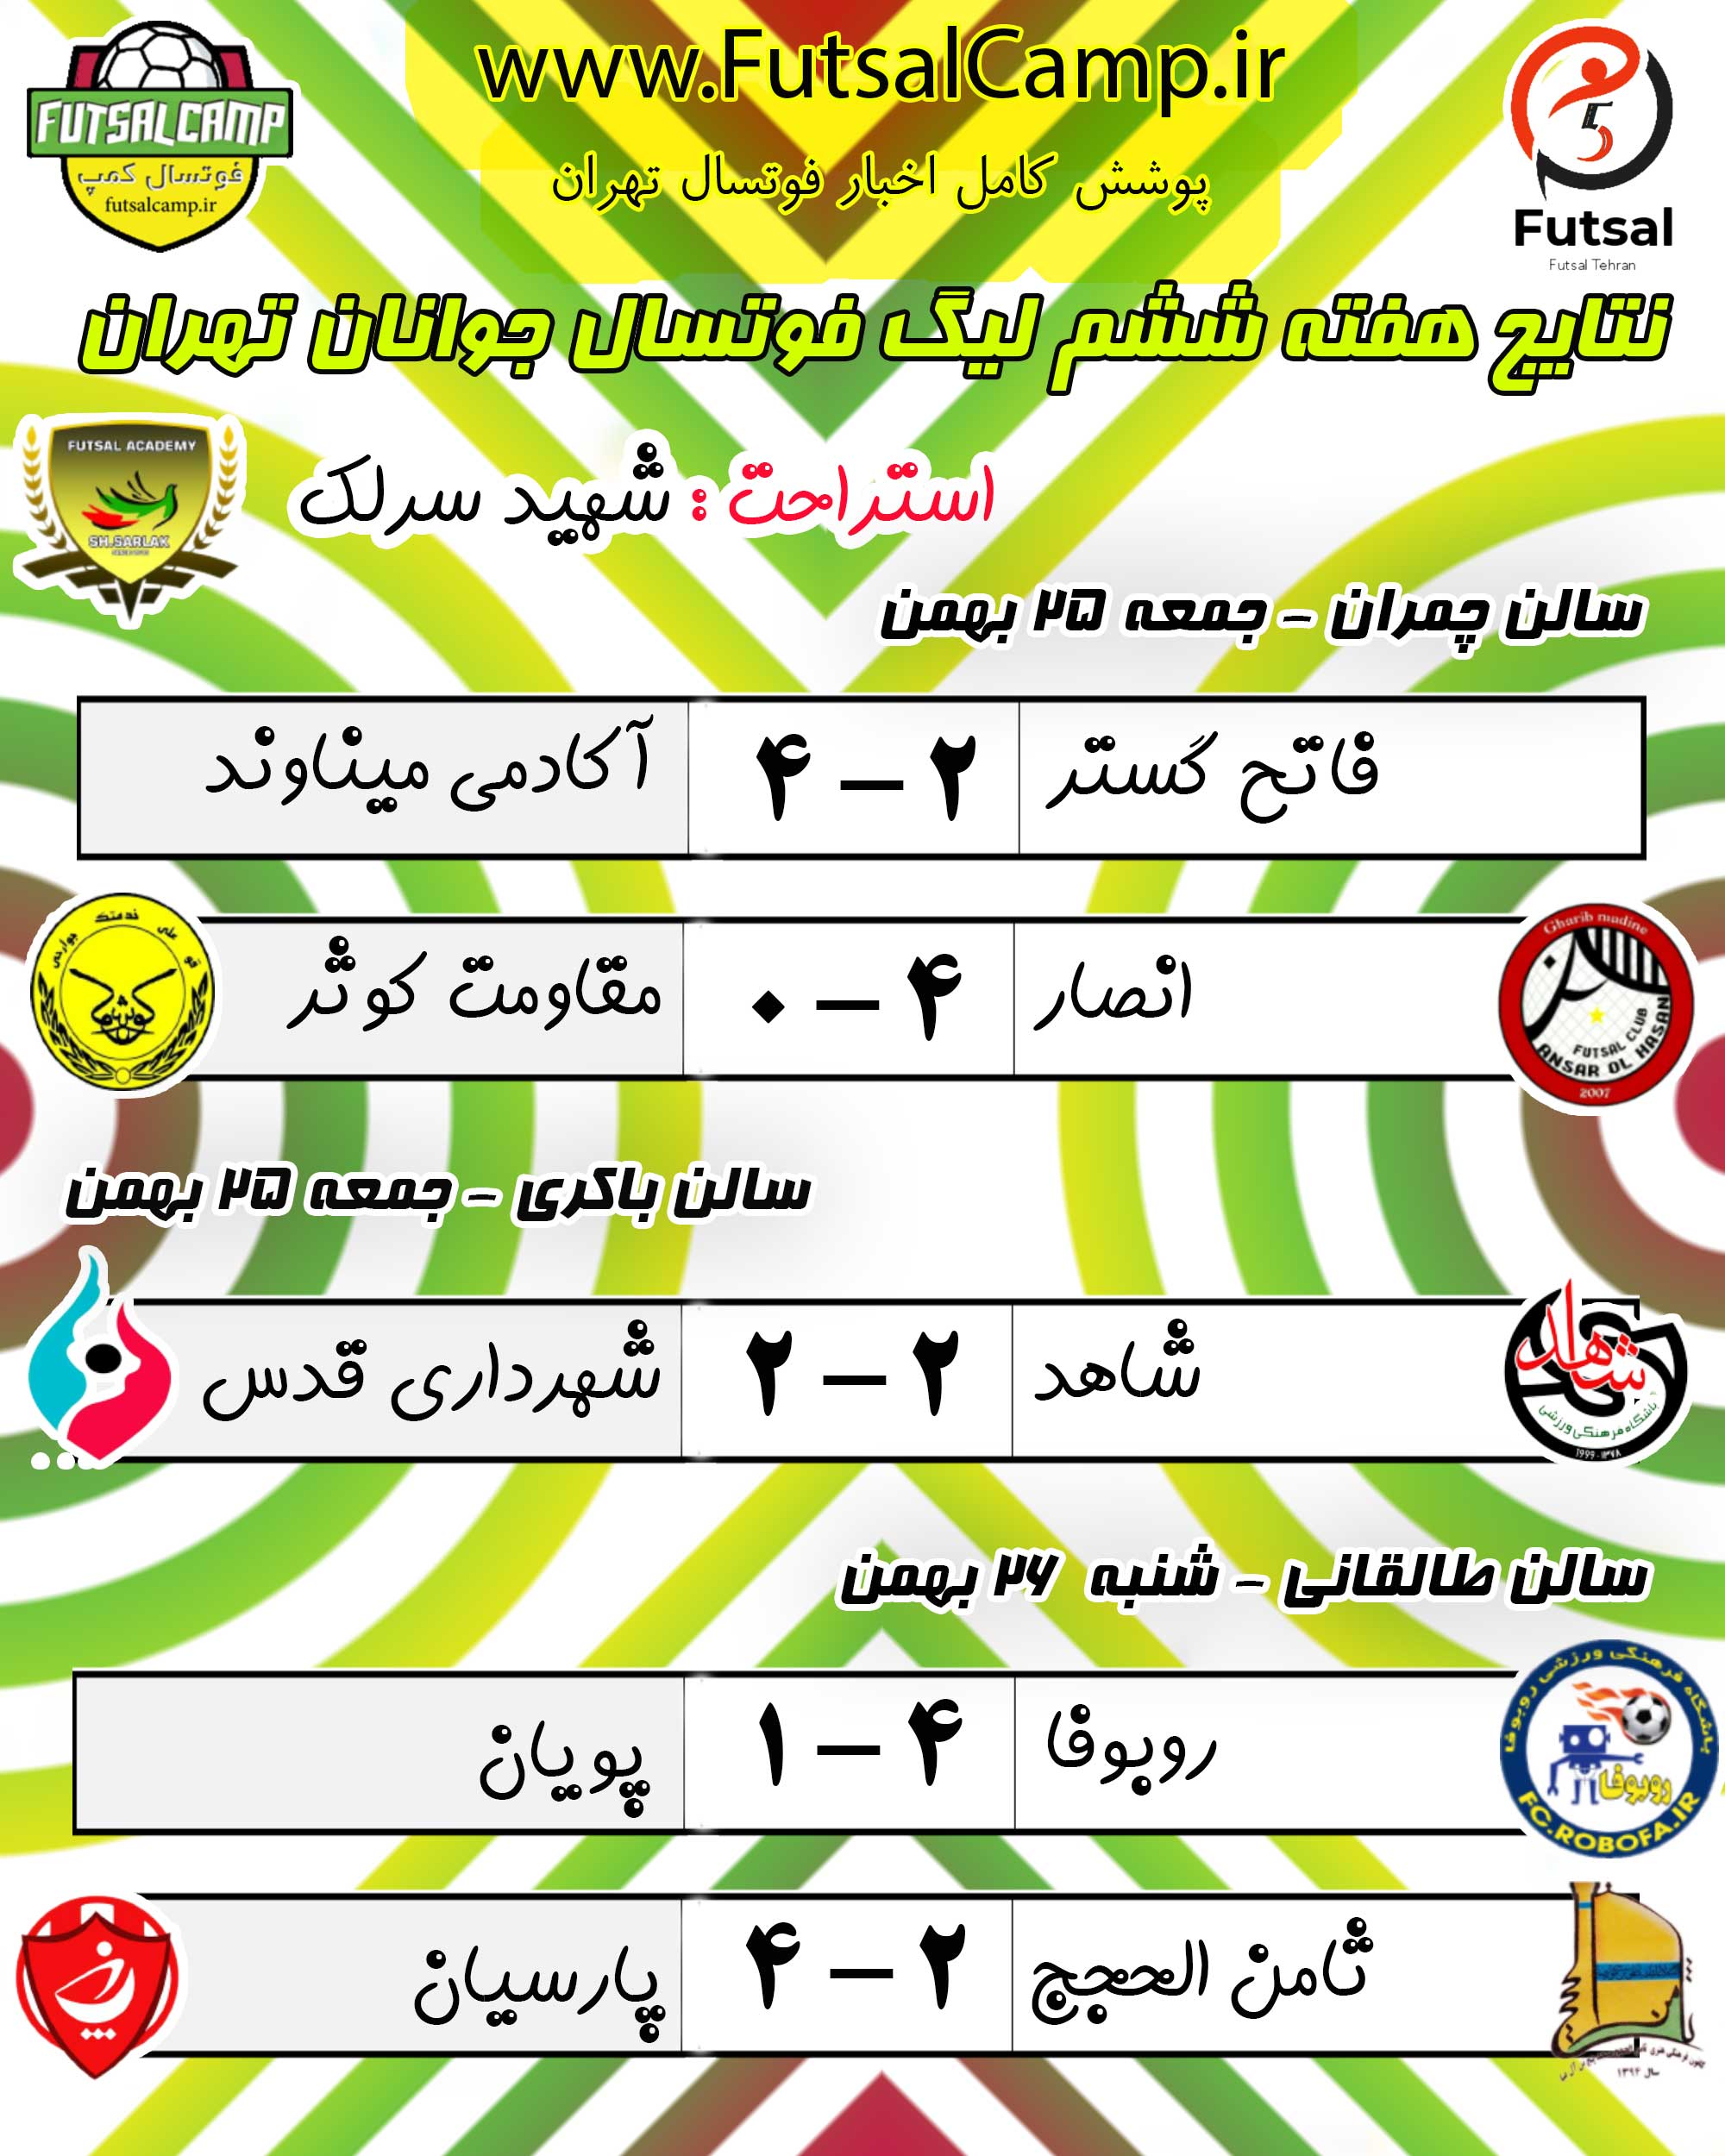 نتایج هفته ششم لیگ فوتسال جوانان تهران